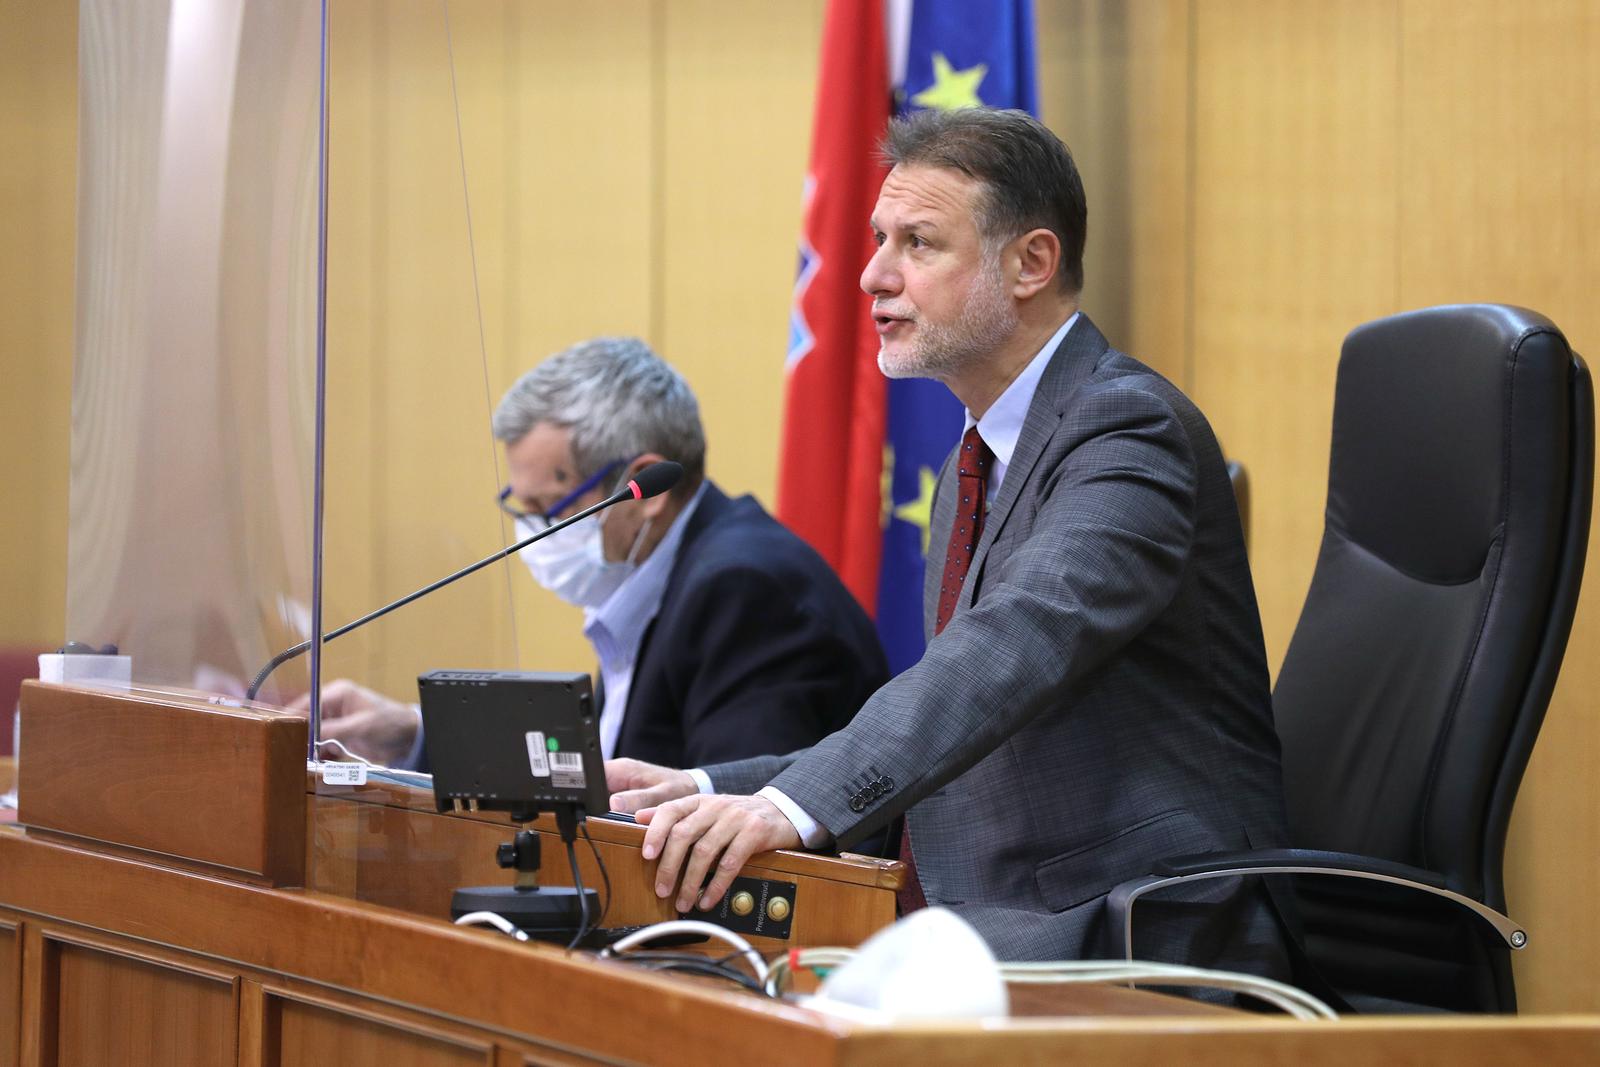 30.11.2021., Zagreb - Sabor 9. sjednicu nastavlja raspravom o Prijedlogu zakona o sprjecavanju sukoba interesa.